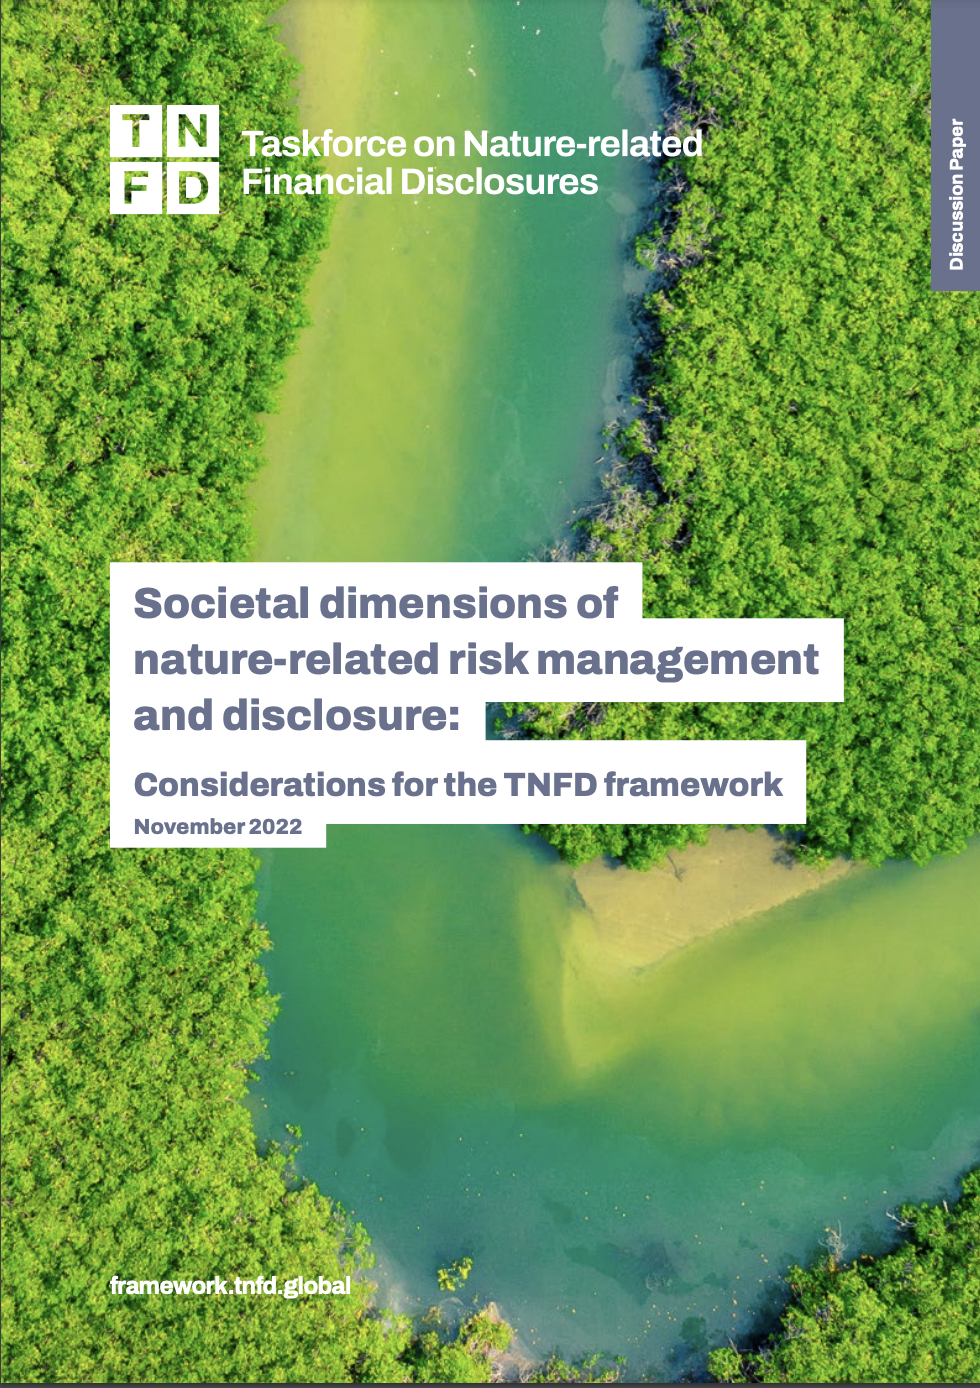 与自然相关的风险管理和披露的社会层面：TNFD 框架的考虑因素